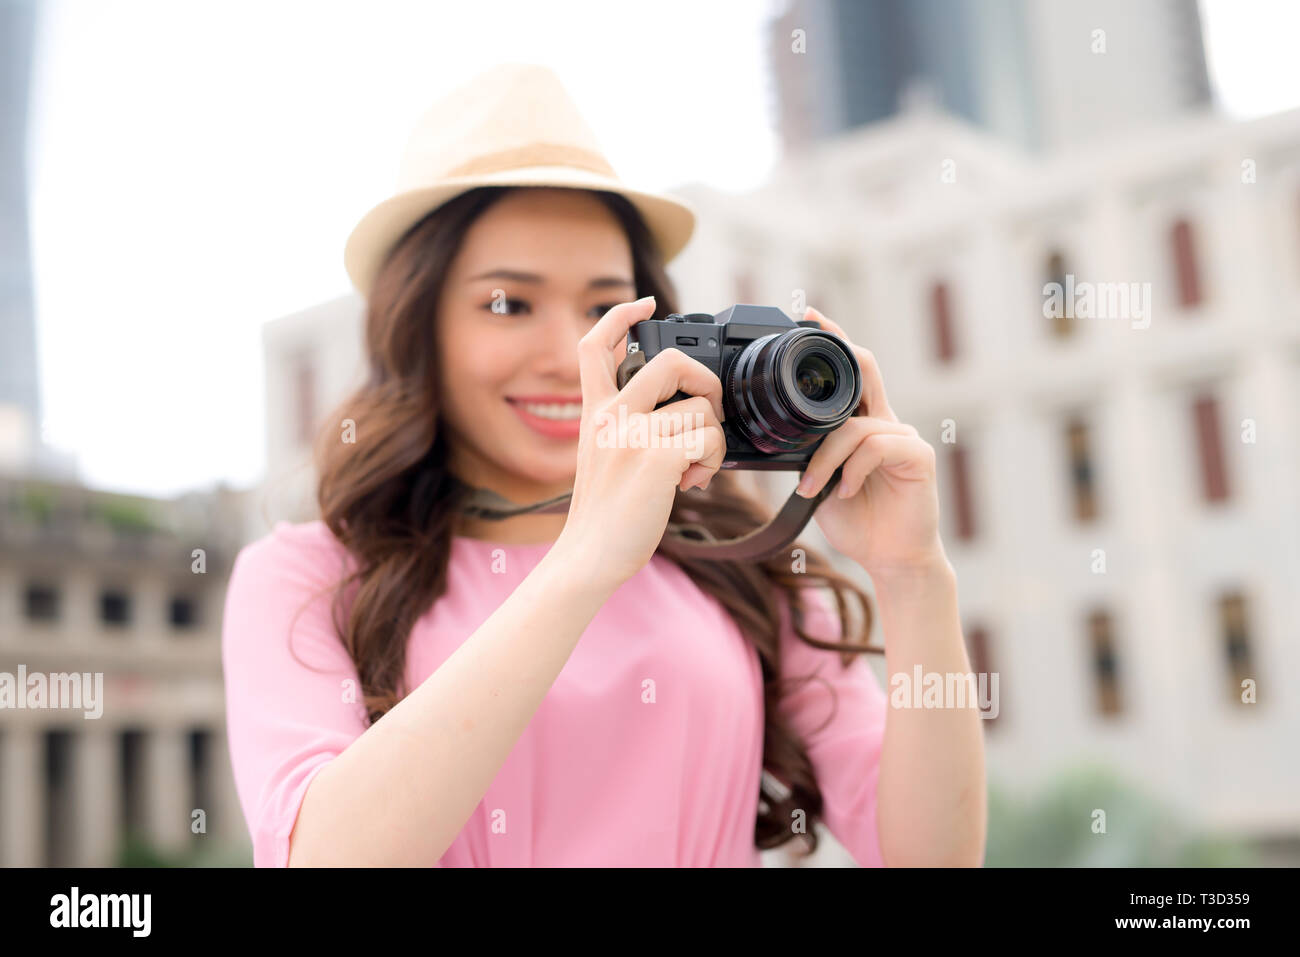 Estilo de vida al aire libre en verano sonriente retrato de mujer bastante joven divirtiéndose en la ciudad de Asia con cámara de fotos de viajes del fotógrafo Foto de stock